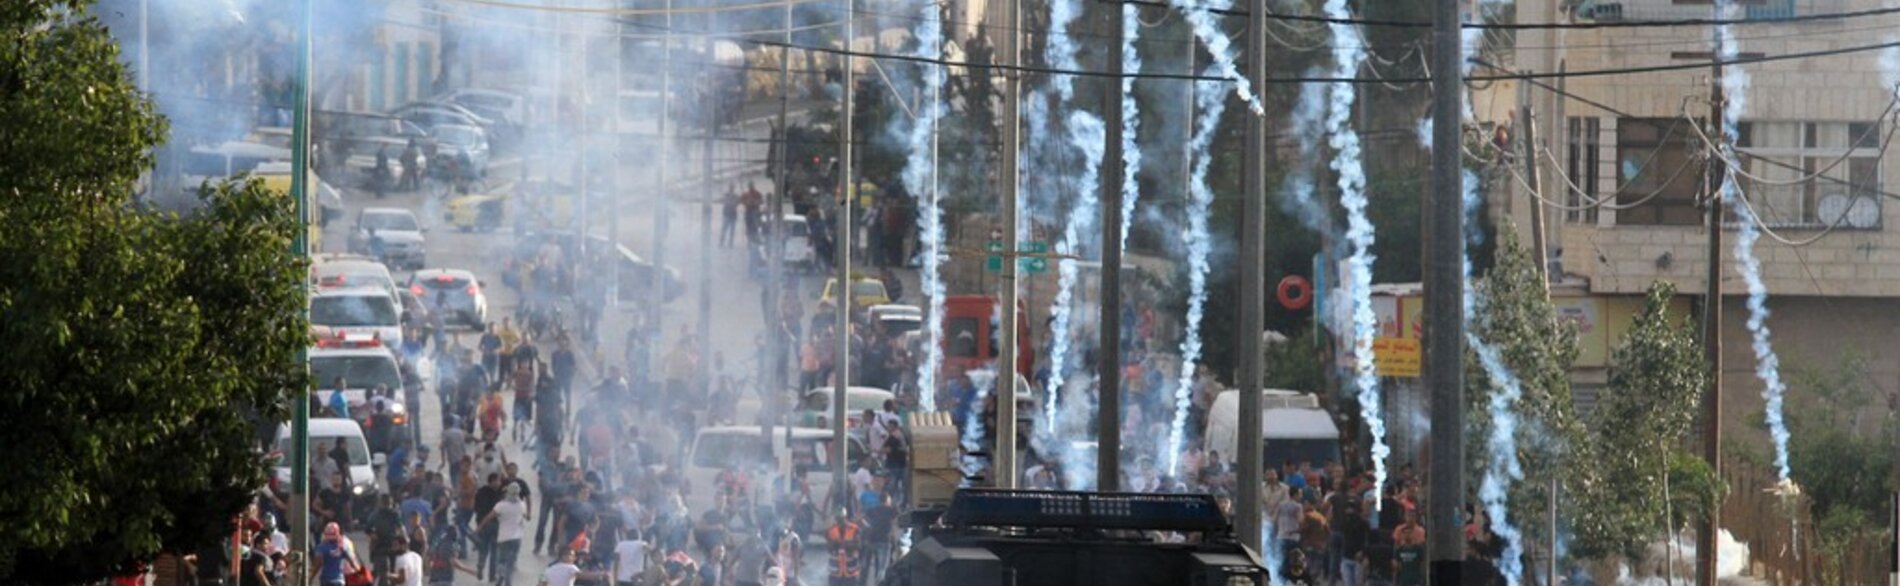 اشتباكات عند المدخل الشمالي لمدينة بيت لحم (قبر راحيل)، 13 تشرين الأول/أكتوبر 2015 تصوير احمد مظهر